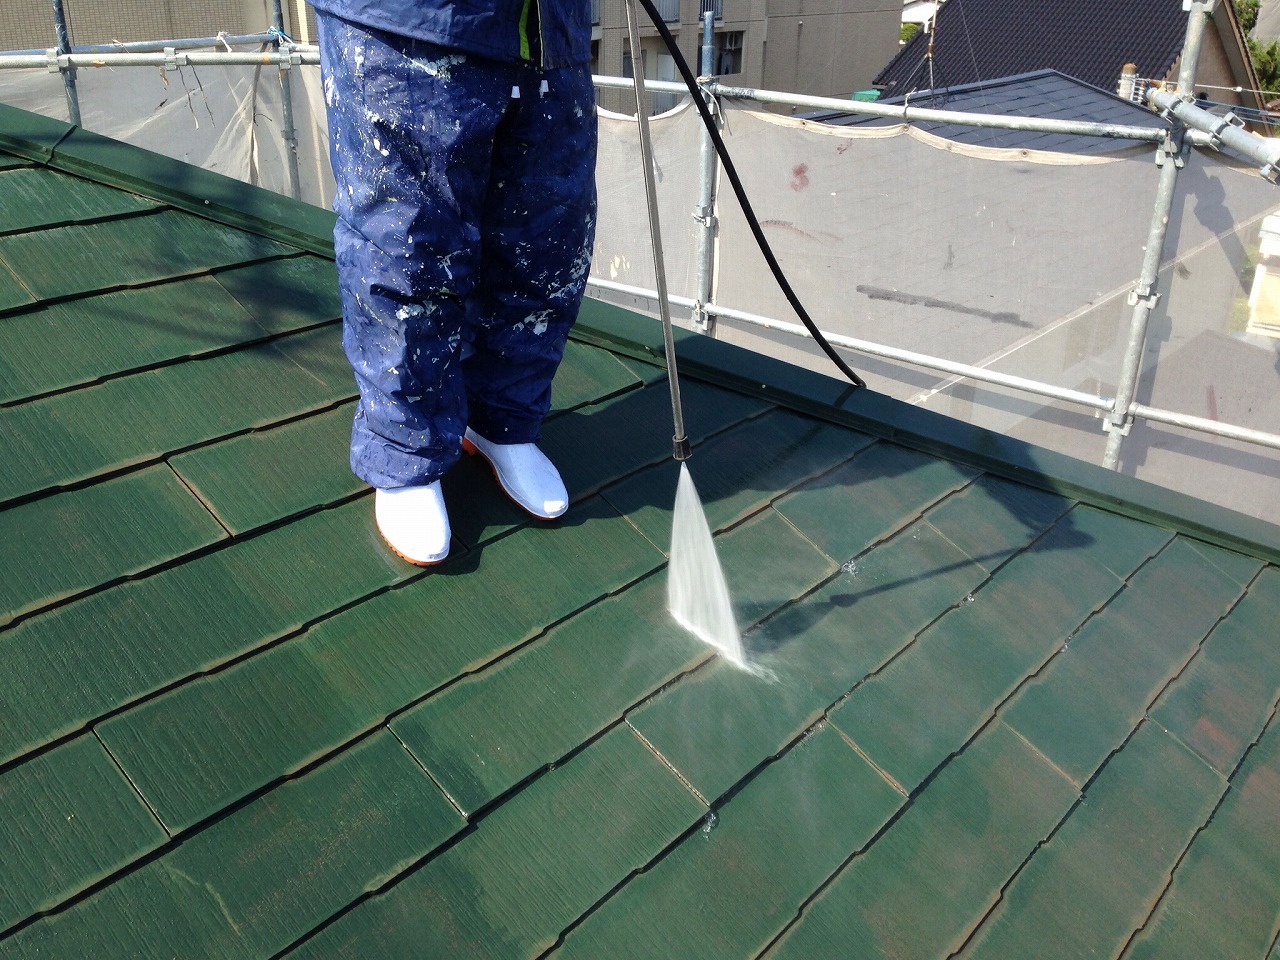 屋根の洗浄